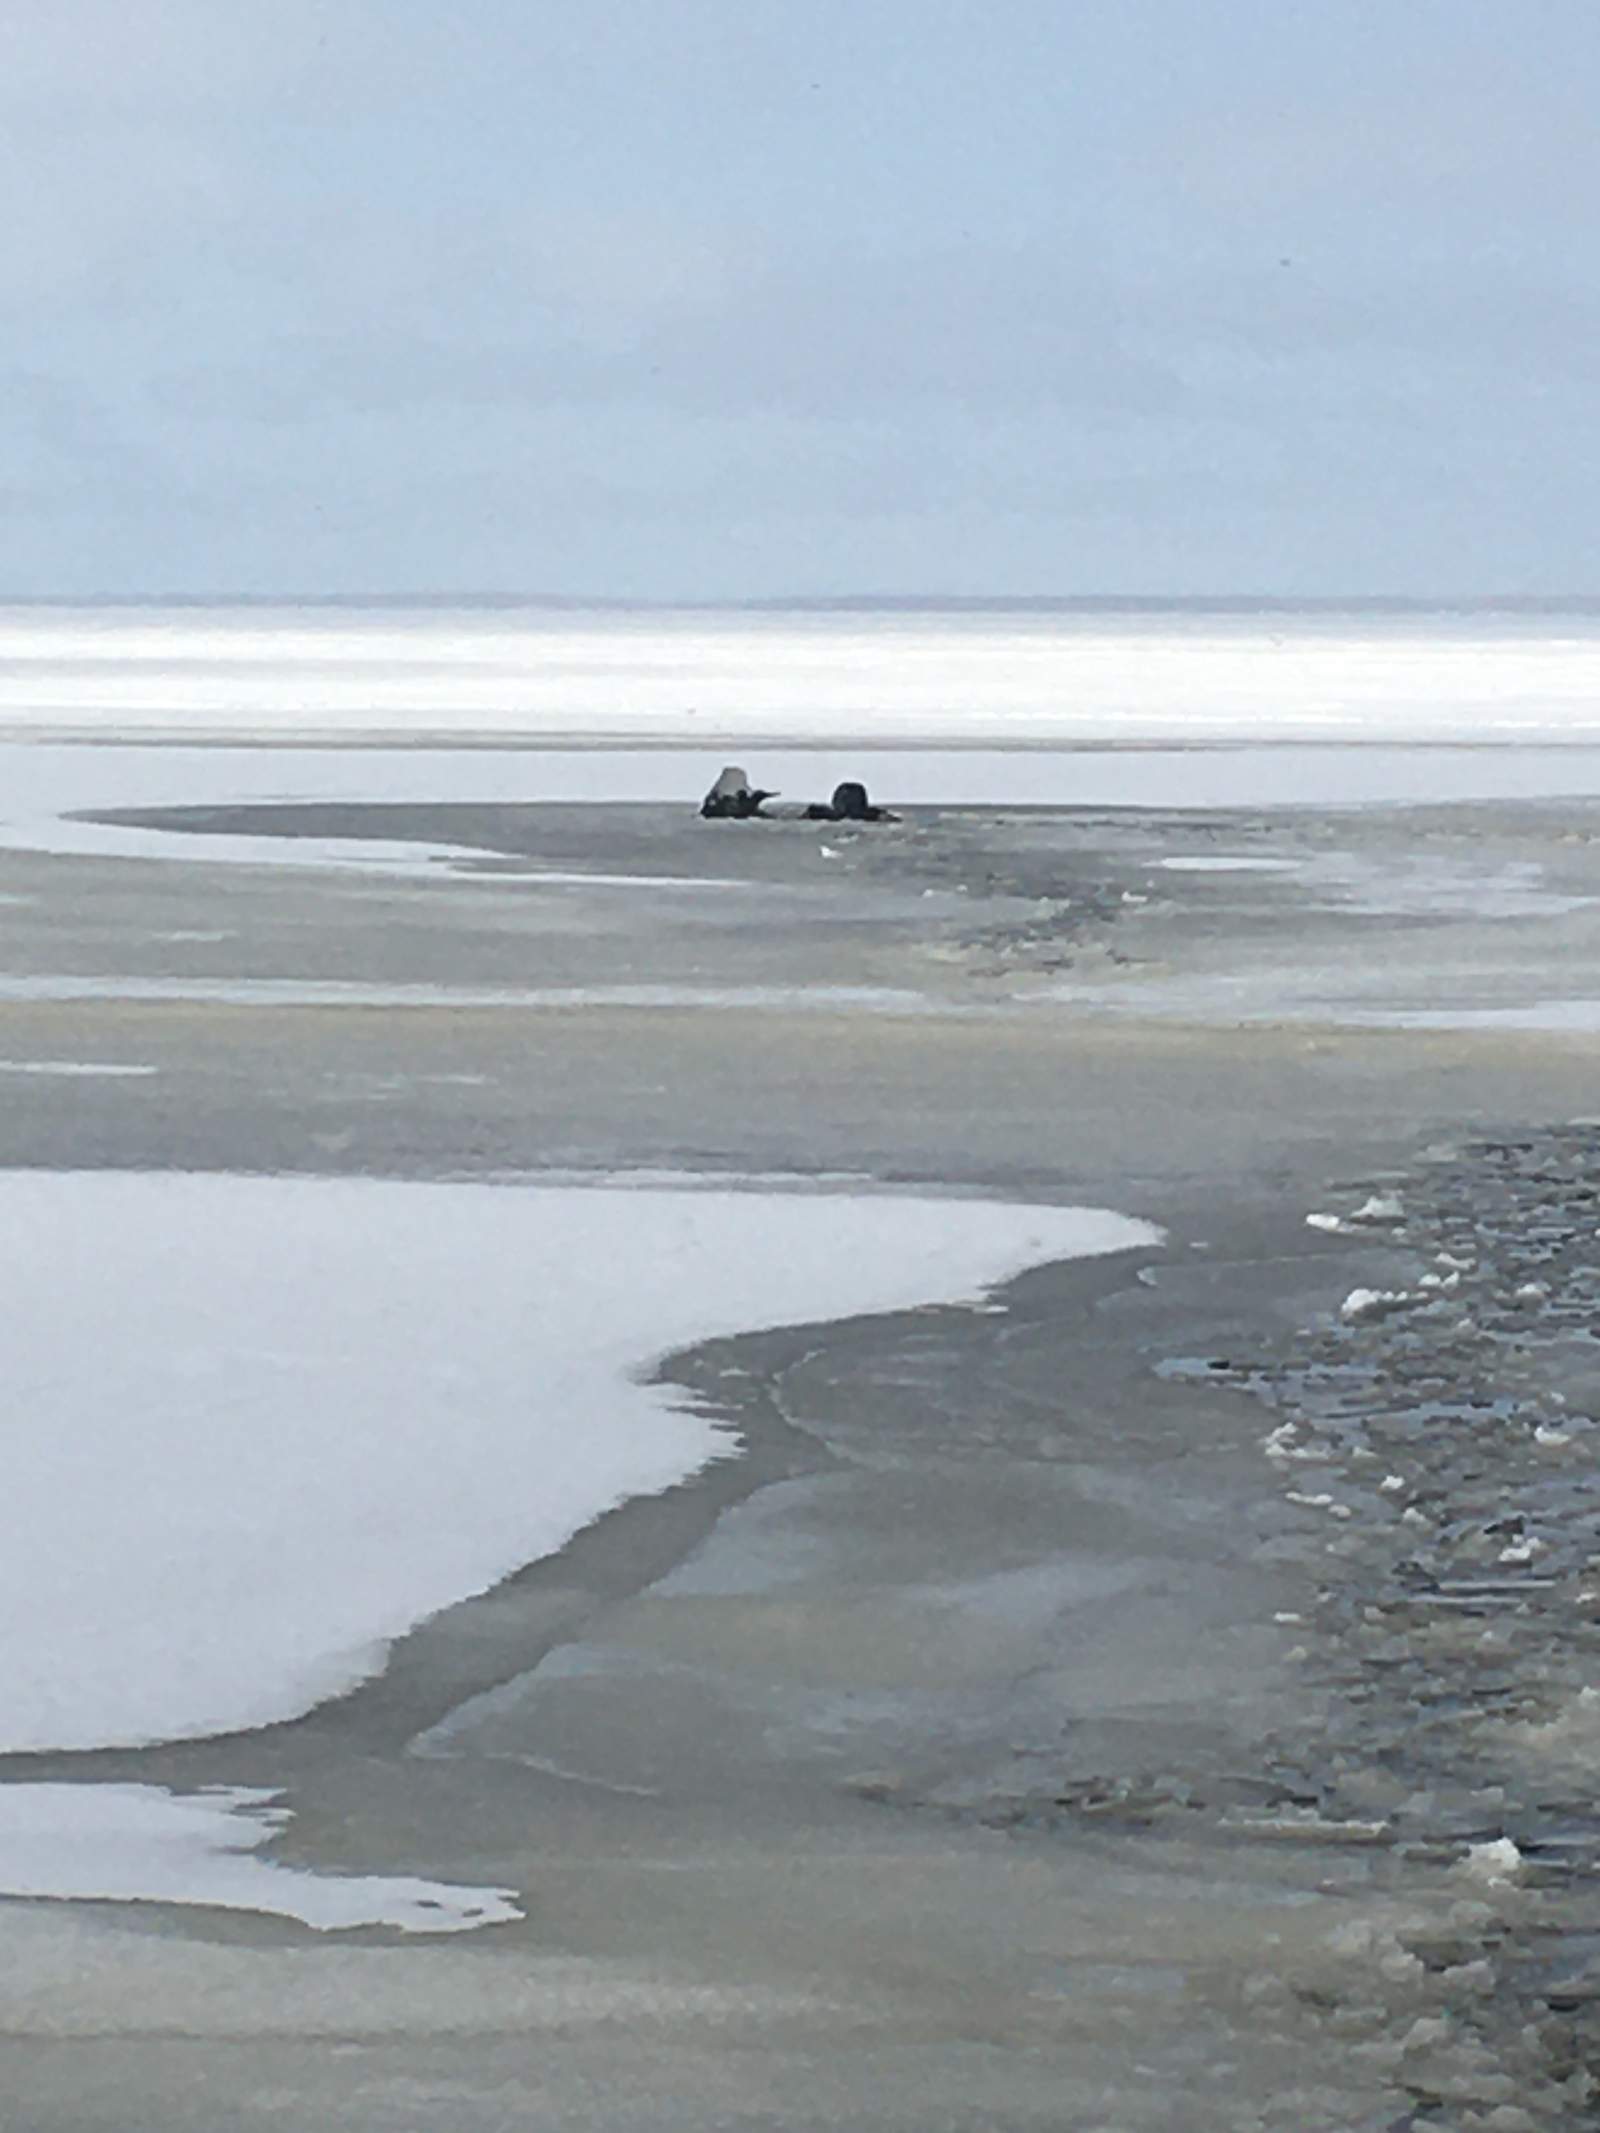 Photos show snowmobiles that fell through thin ice on Houghton Lake